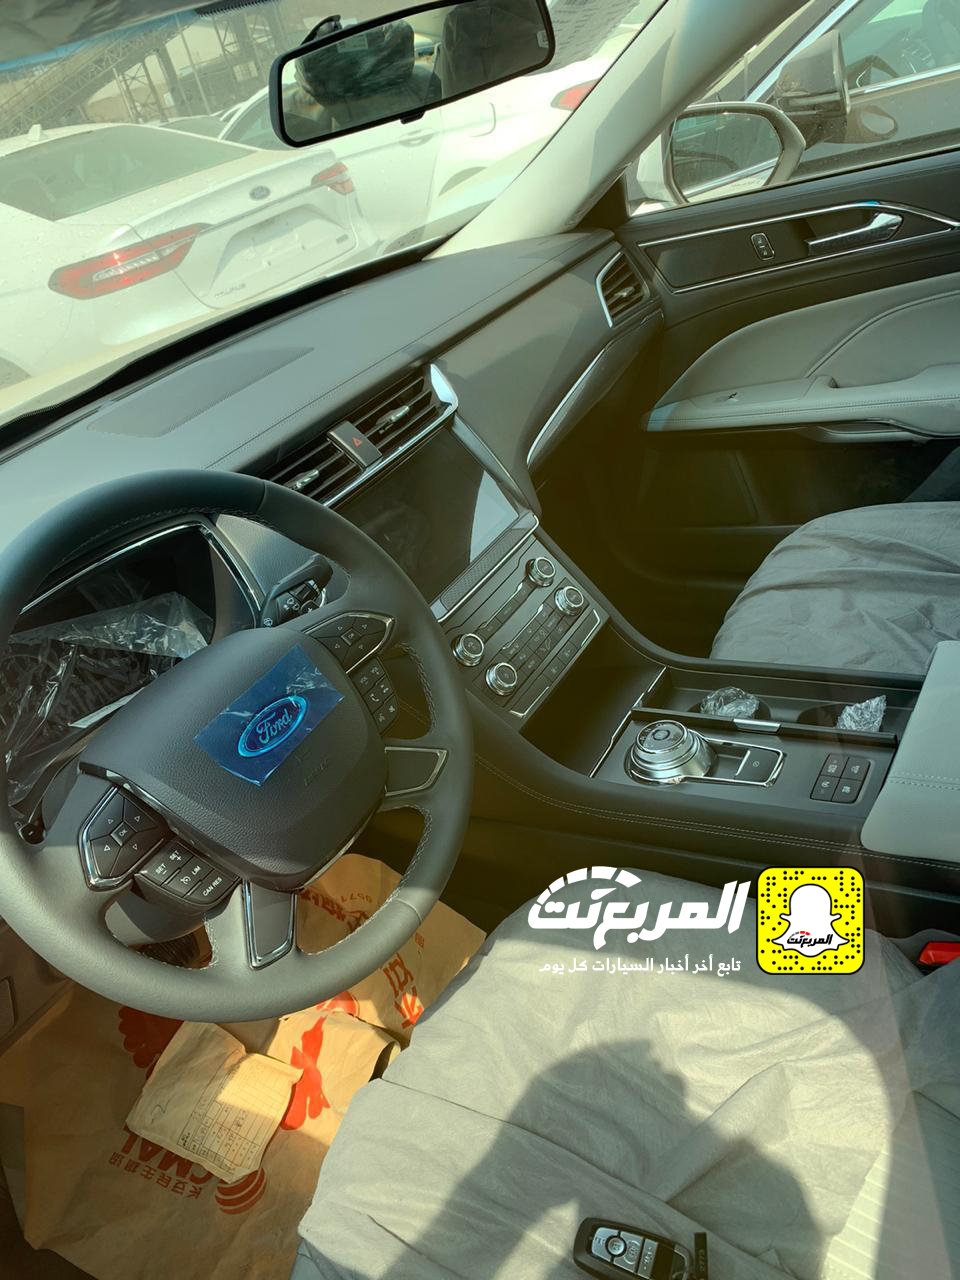 "بالصور" وصول فورد توروس 2020 الجديدة كلياً الى السعودية + التفاصيل Ford Taurus 35